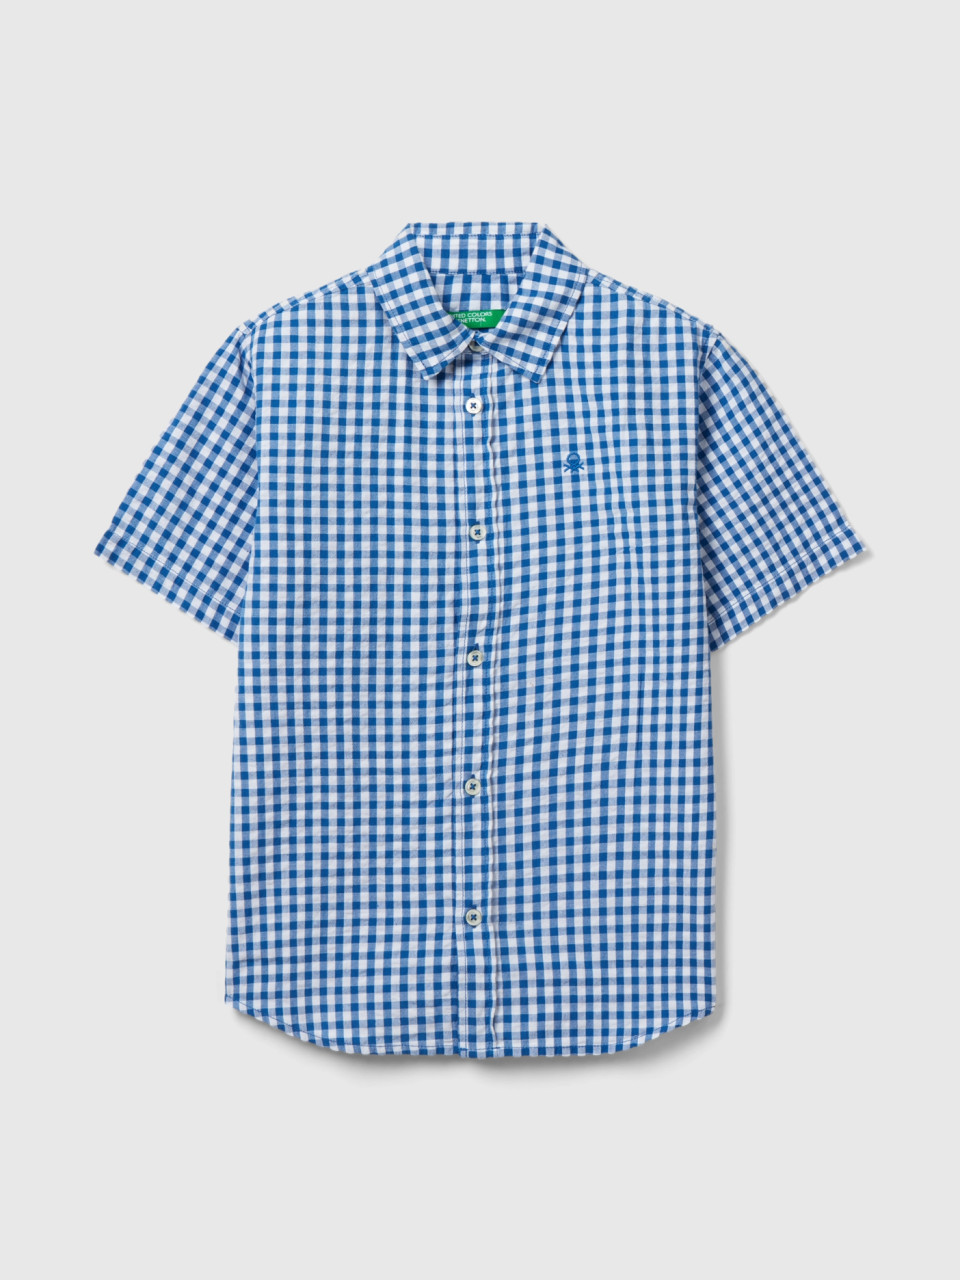 Benetton, Short Sleeve Check Shirt, Blue, Kids